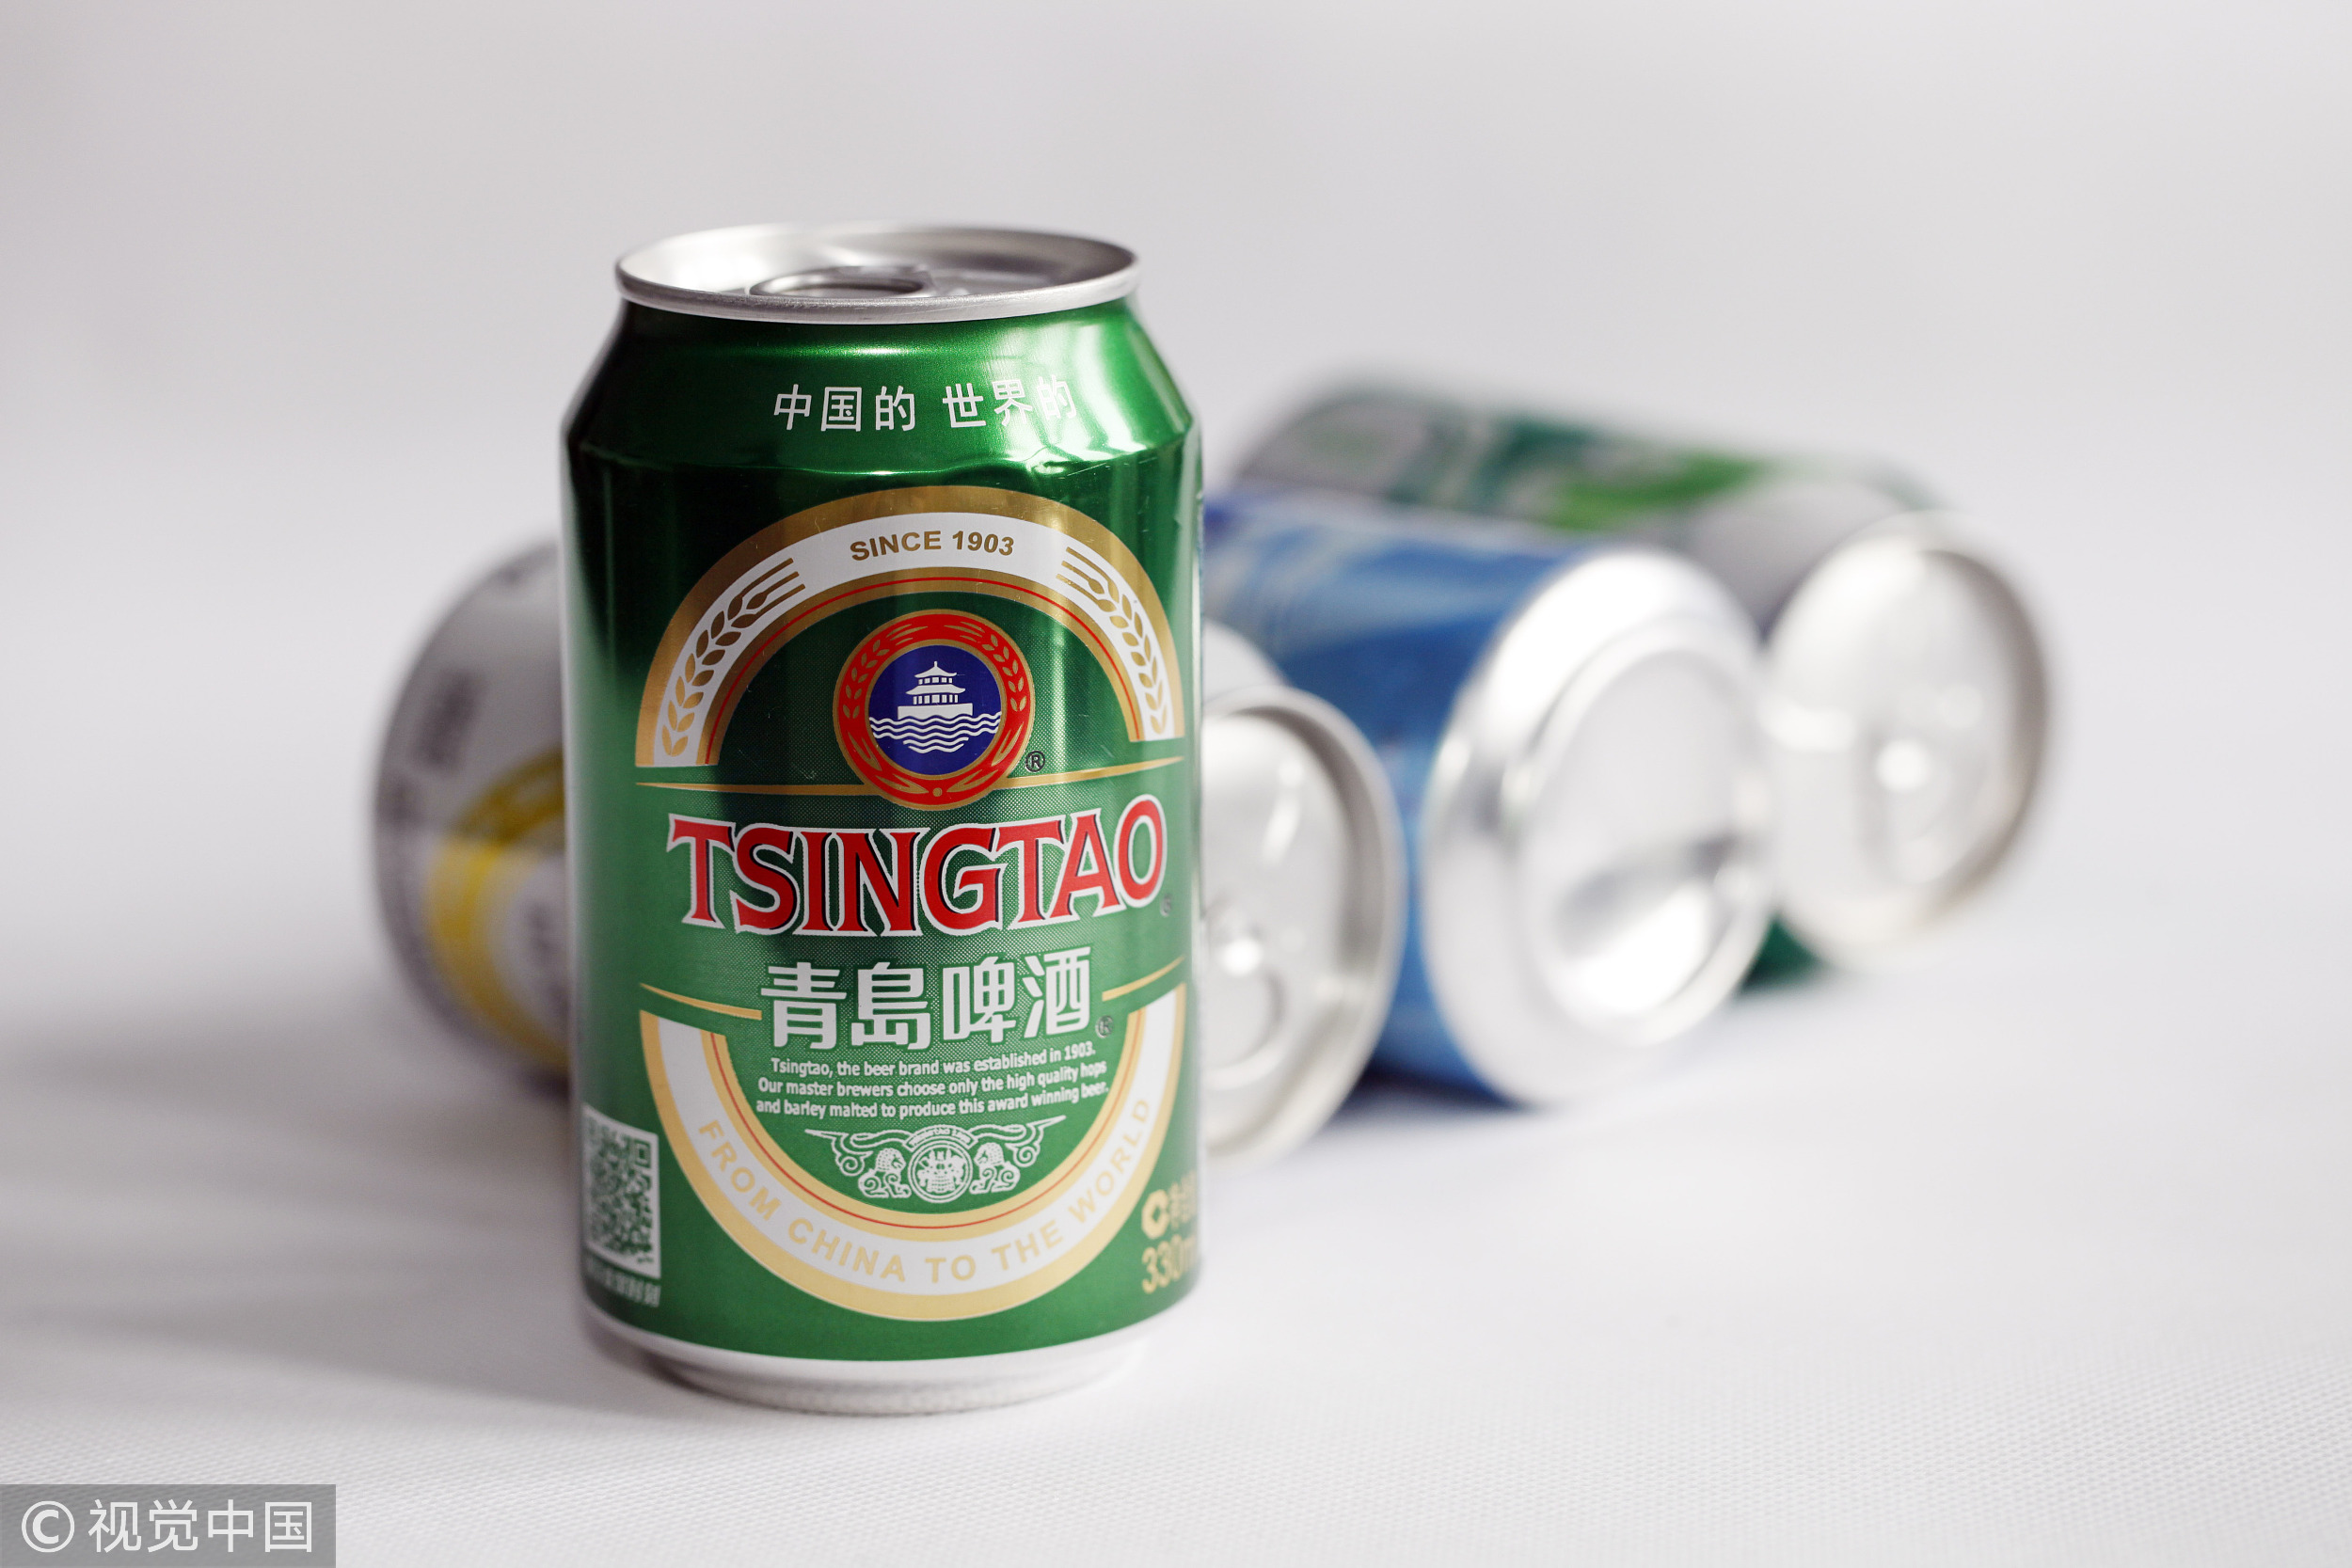 青岛啤酒酷啤易拉罐图片